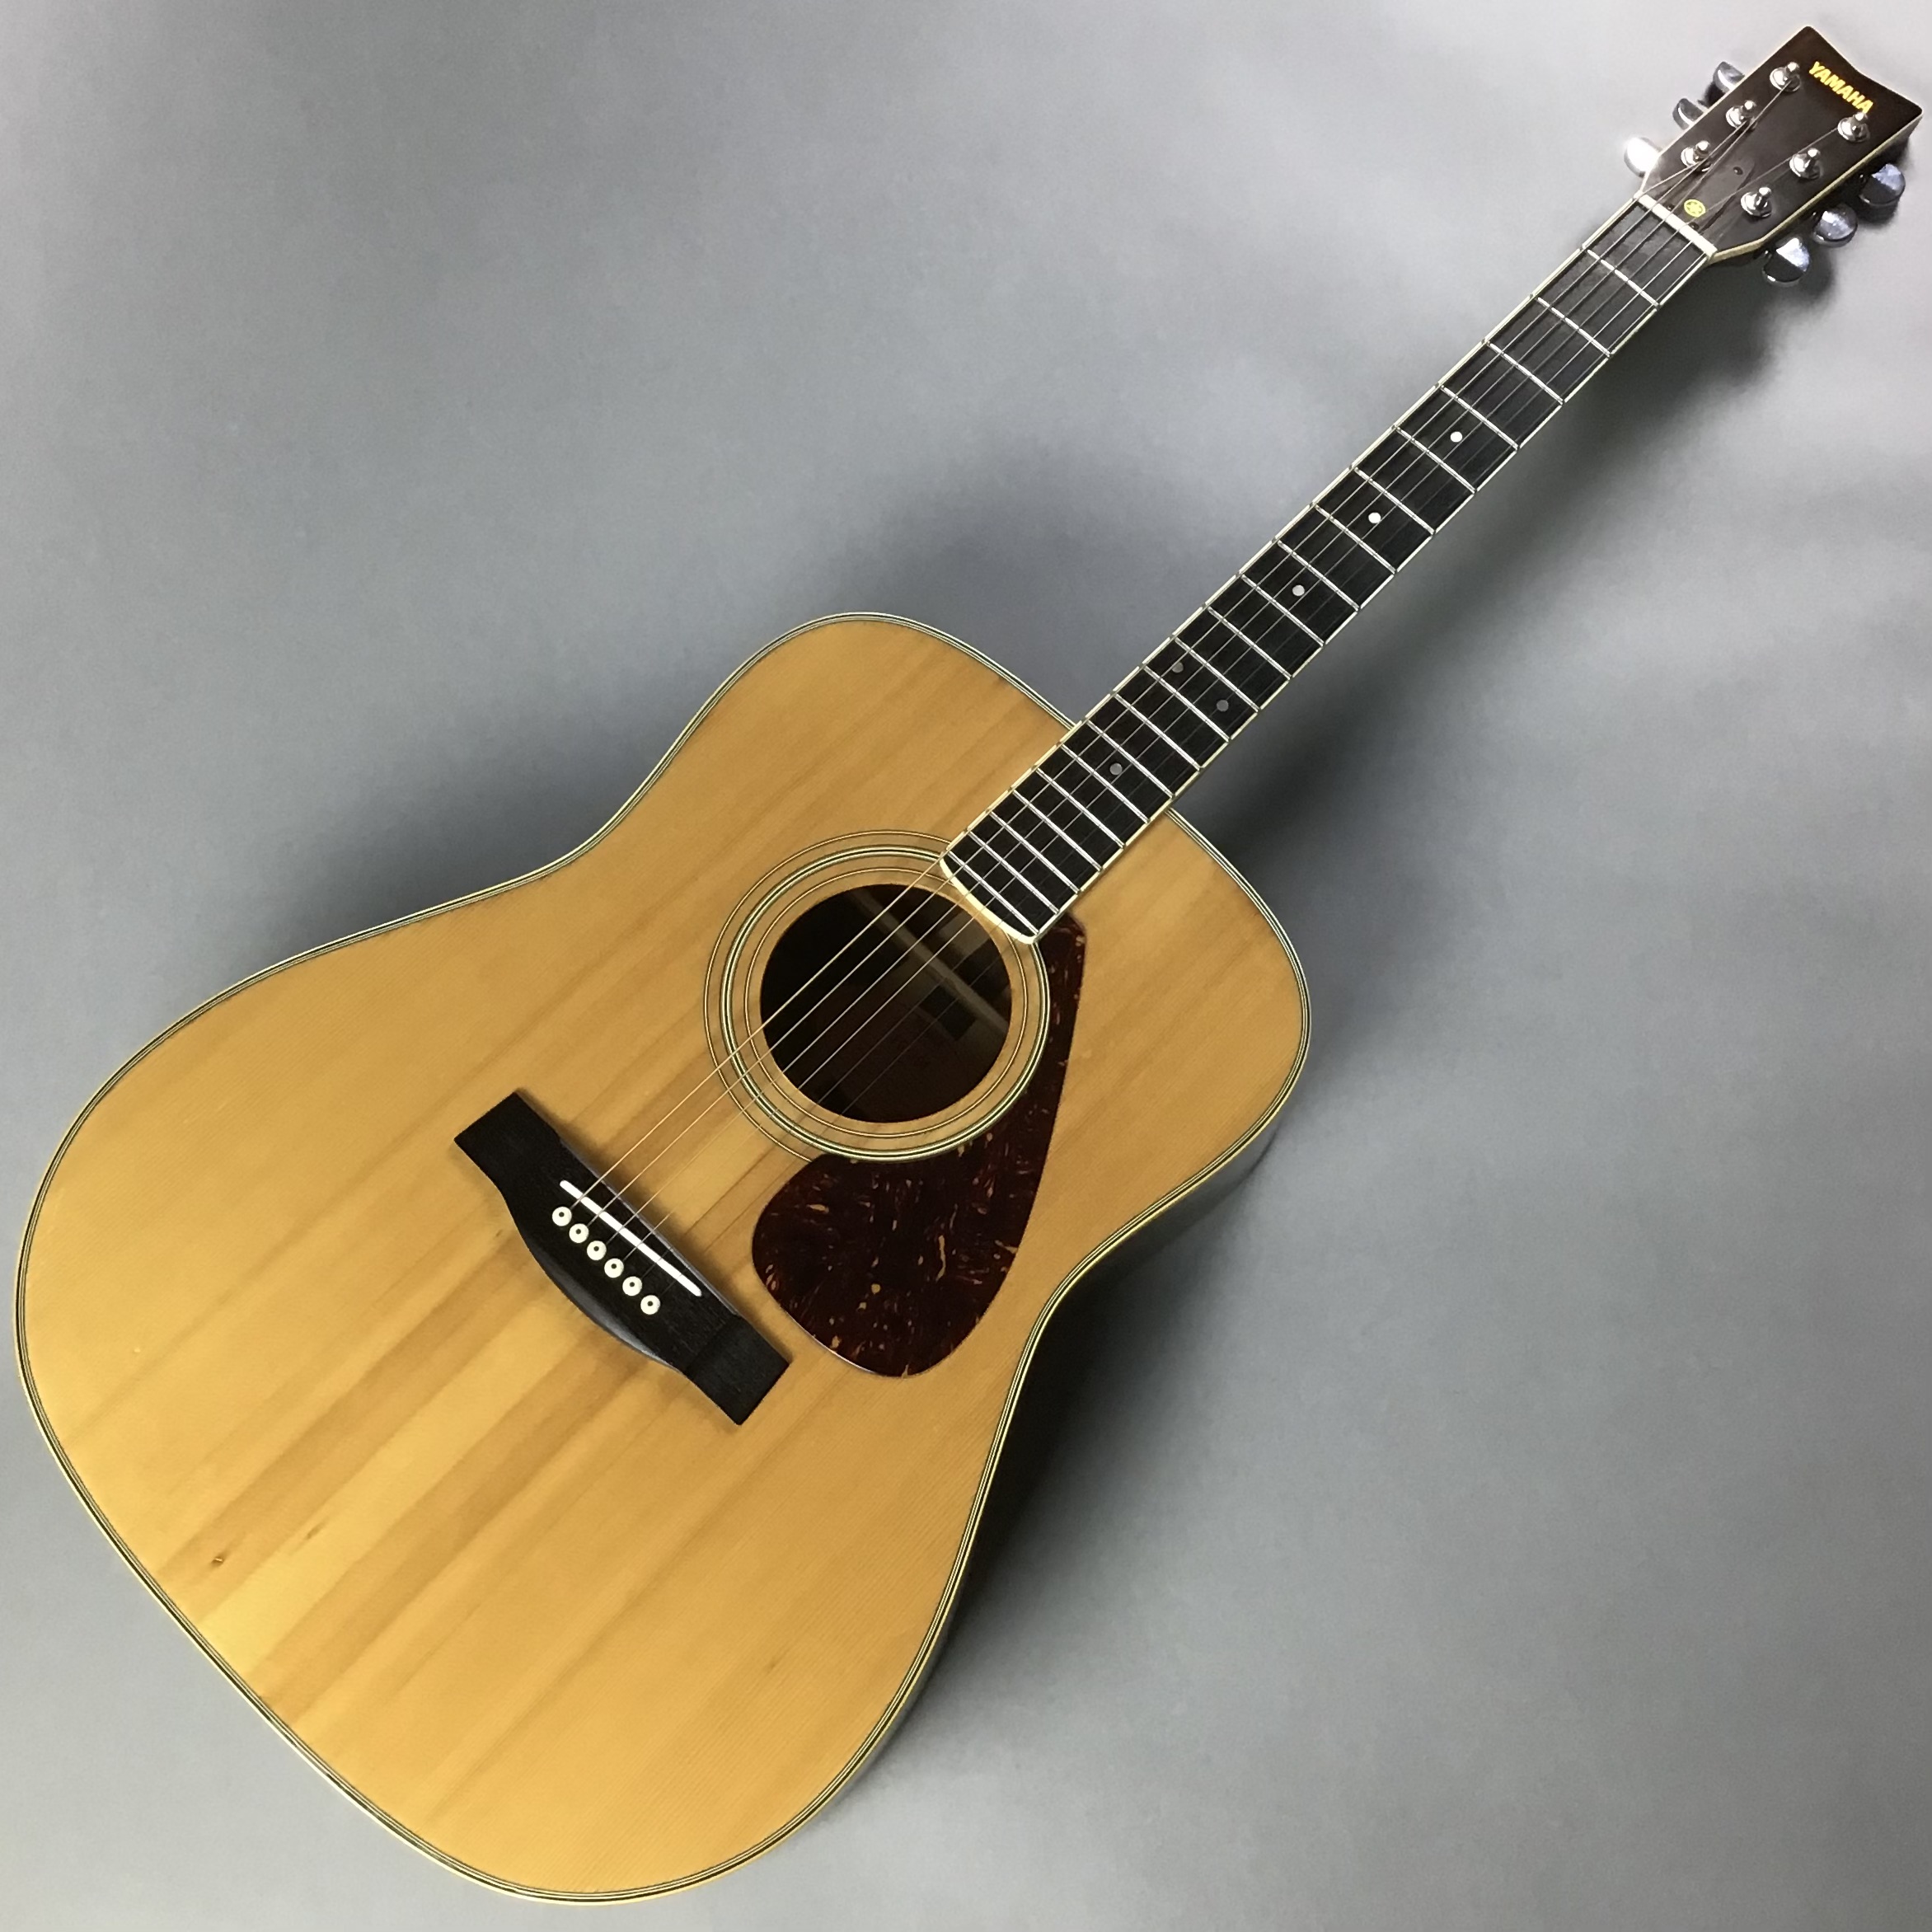 アコースティックギター YAMAHA FG301 オレンジラベル - 弦楽器、ギター